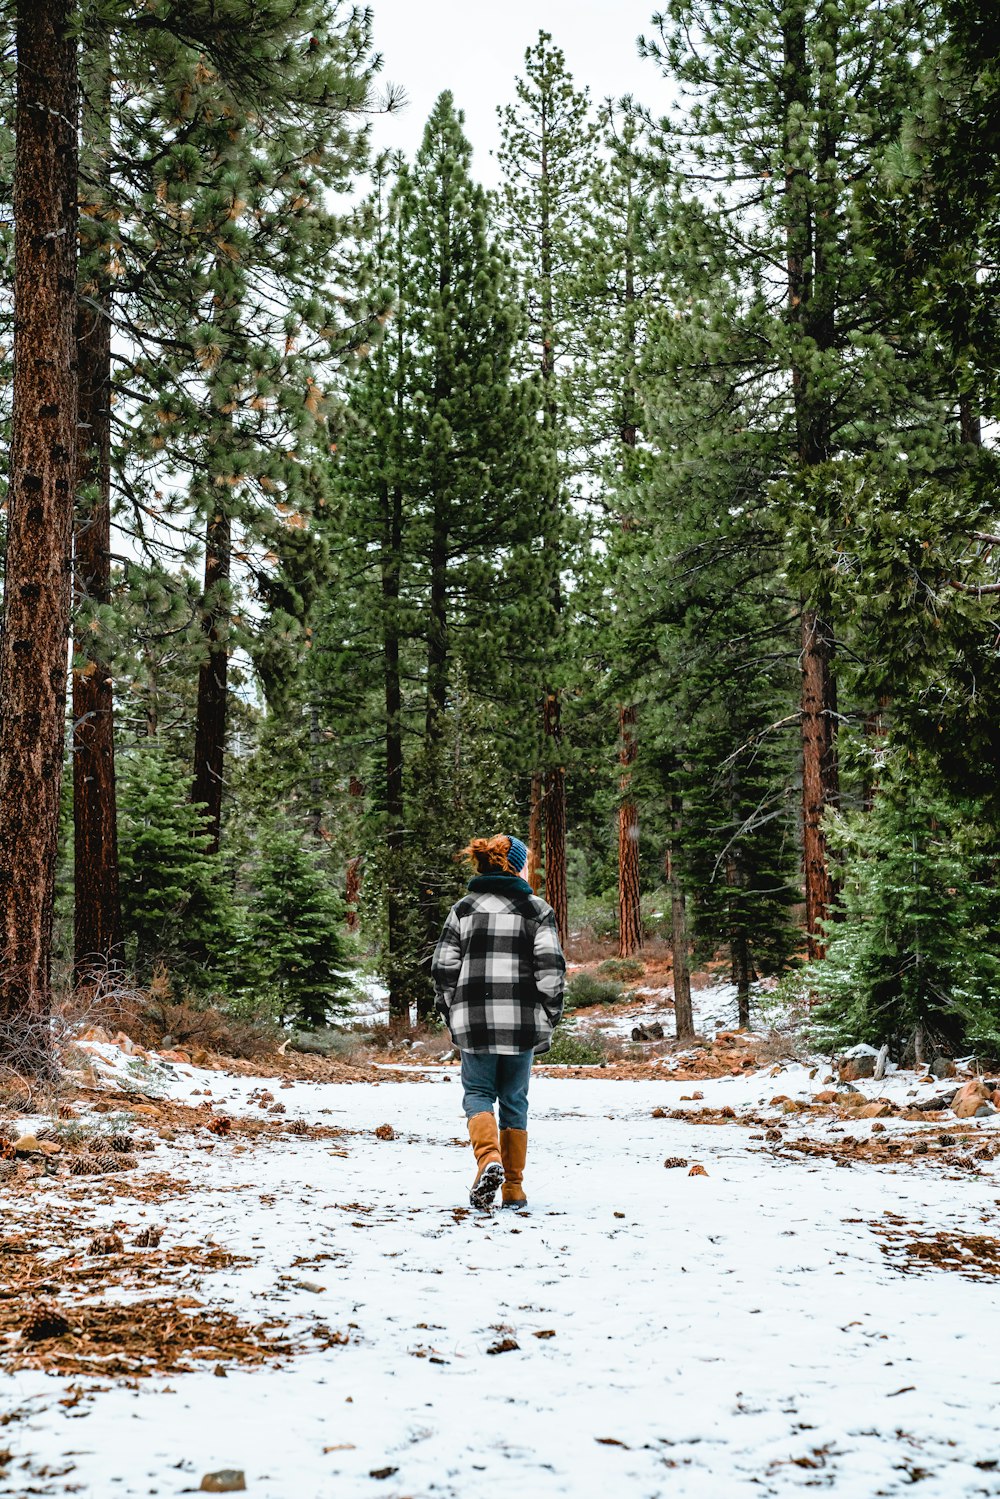 青と白のチェック柄のジャケットとブルーデニムジーンズの男が雪に覆われた小道を歩いている